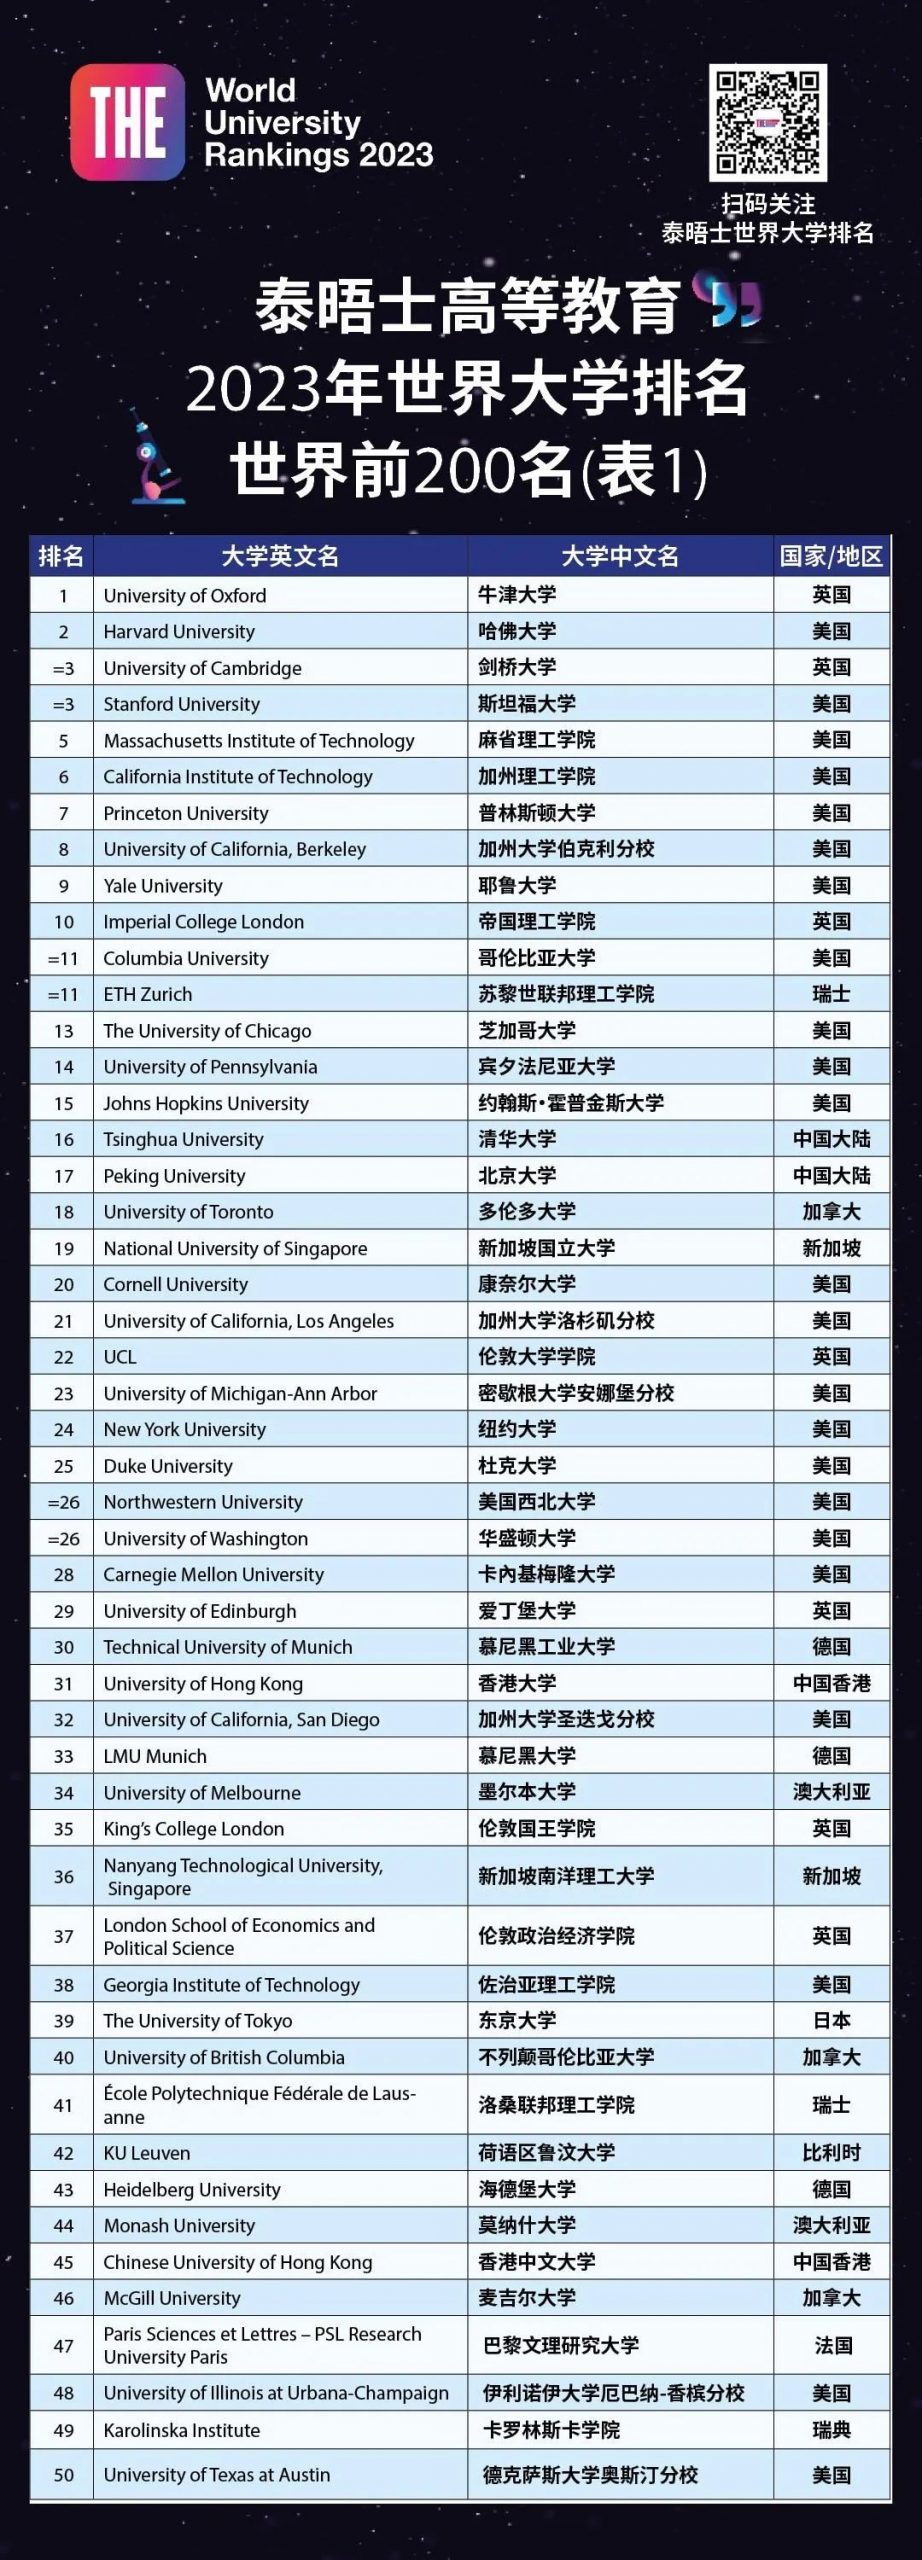 泰晤士世界大学排名 2023 - 05